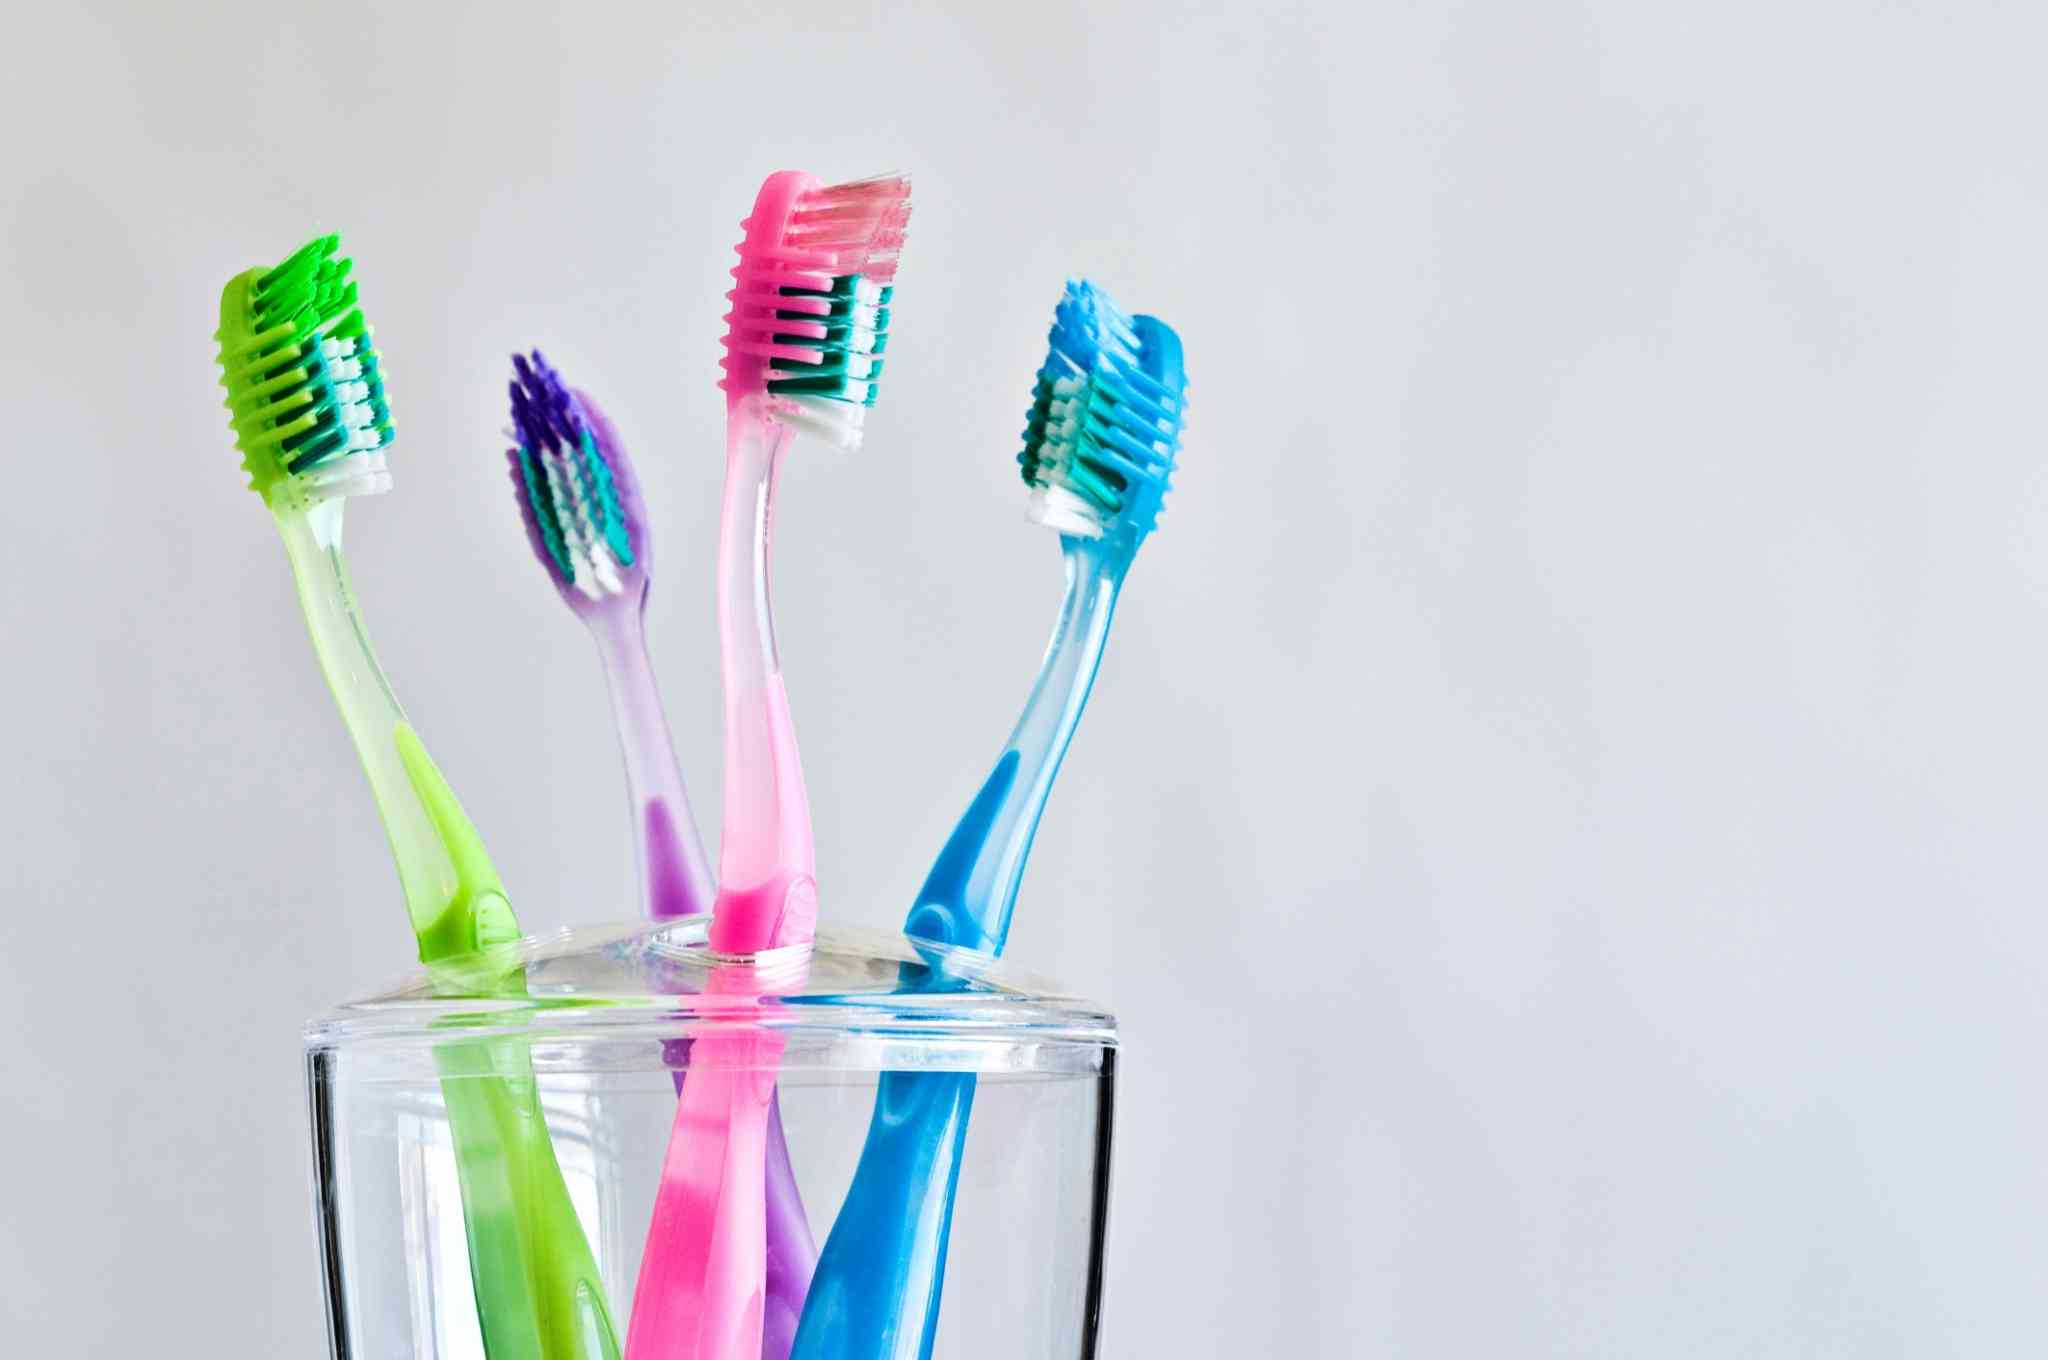 Tu cepillo de dientes puede contener millones de bacterias, ¡oh! He aquí cómo evitar los cepillos de dientes contaminados